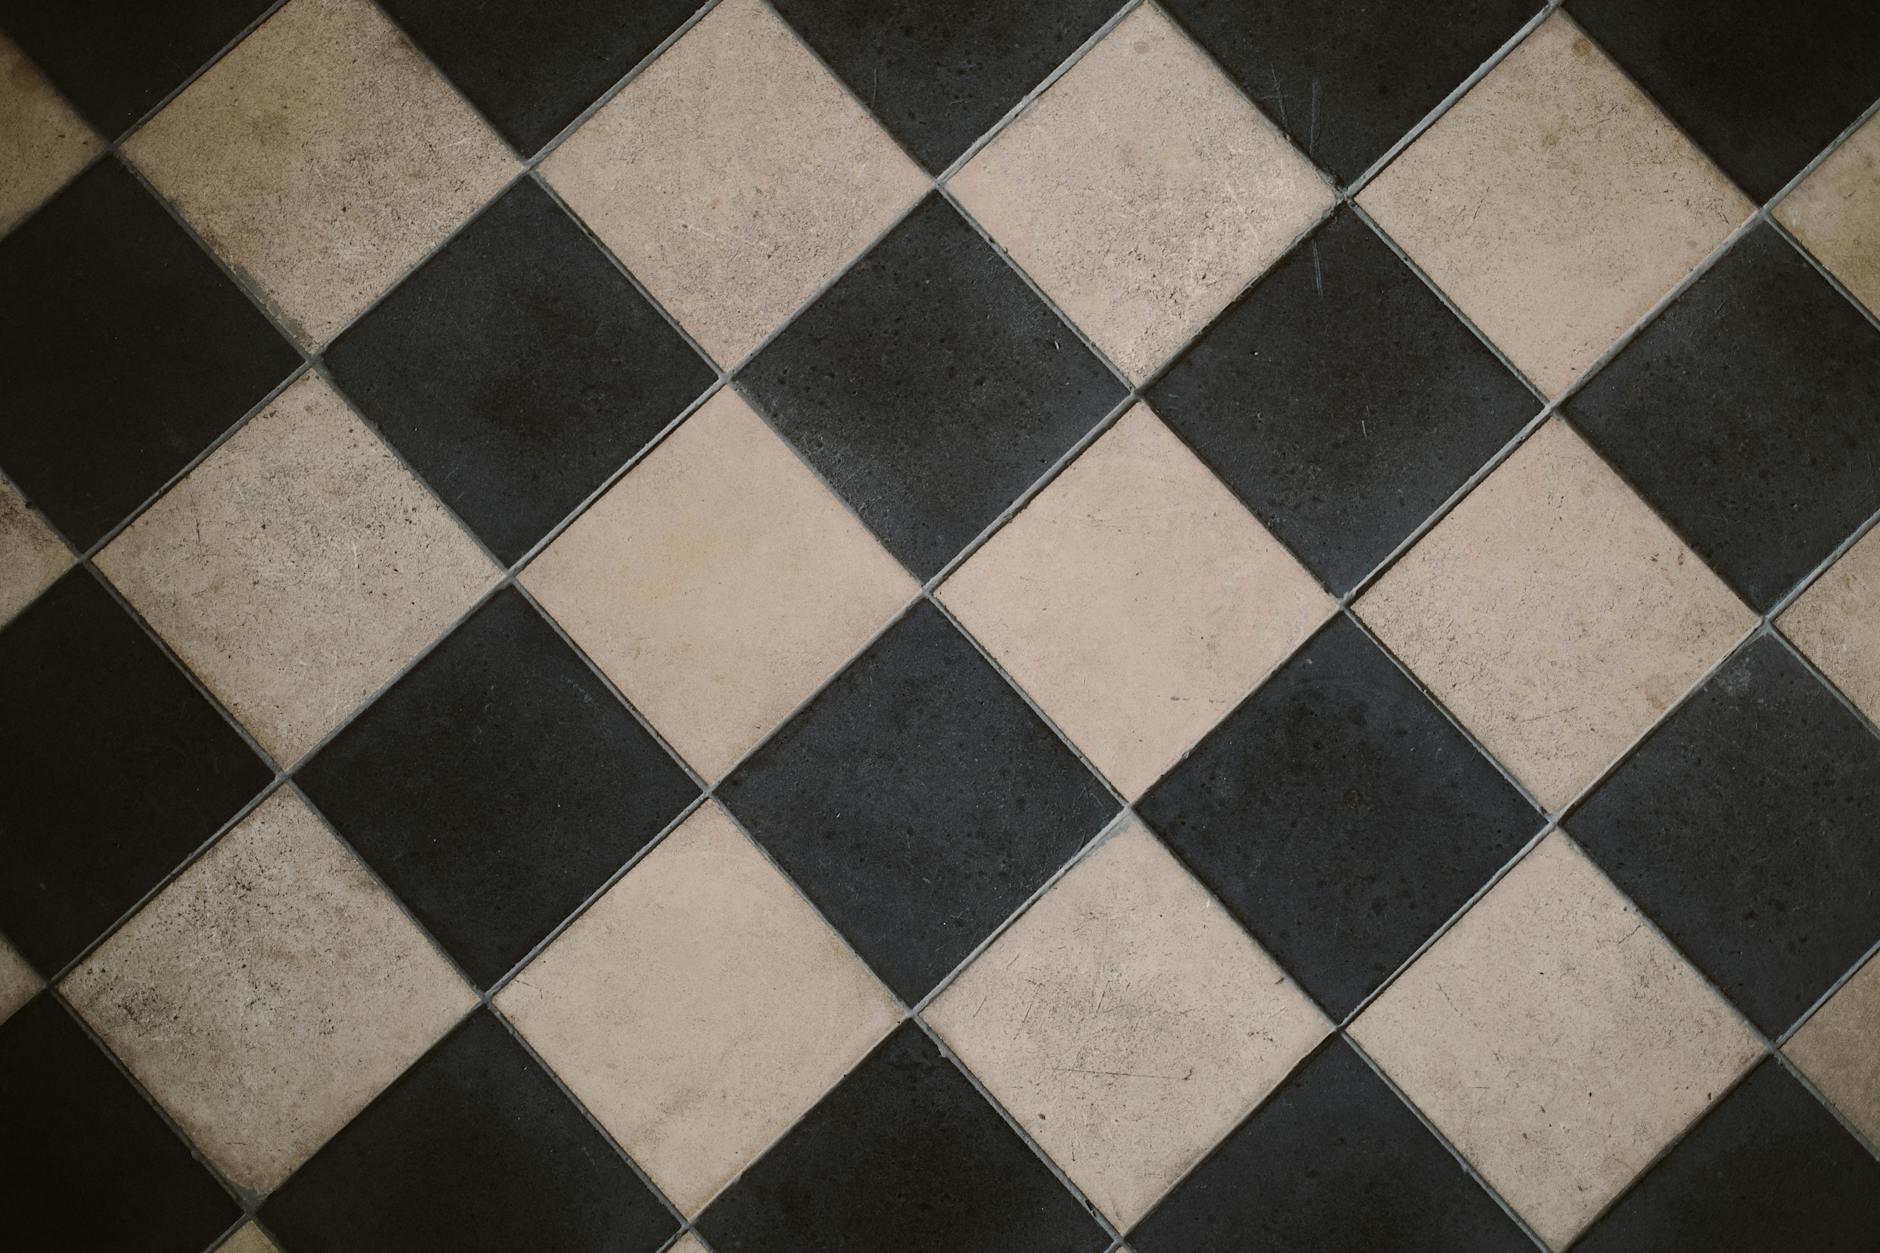 black-and-white-checkered-tiles-free-stock-photo